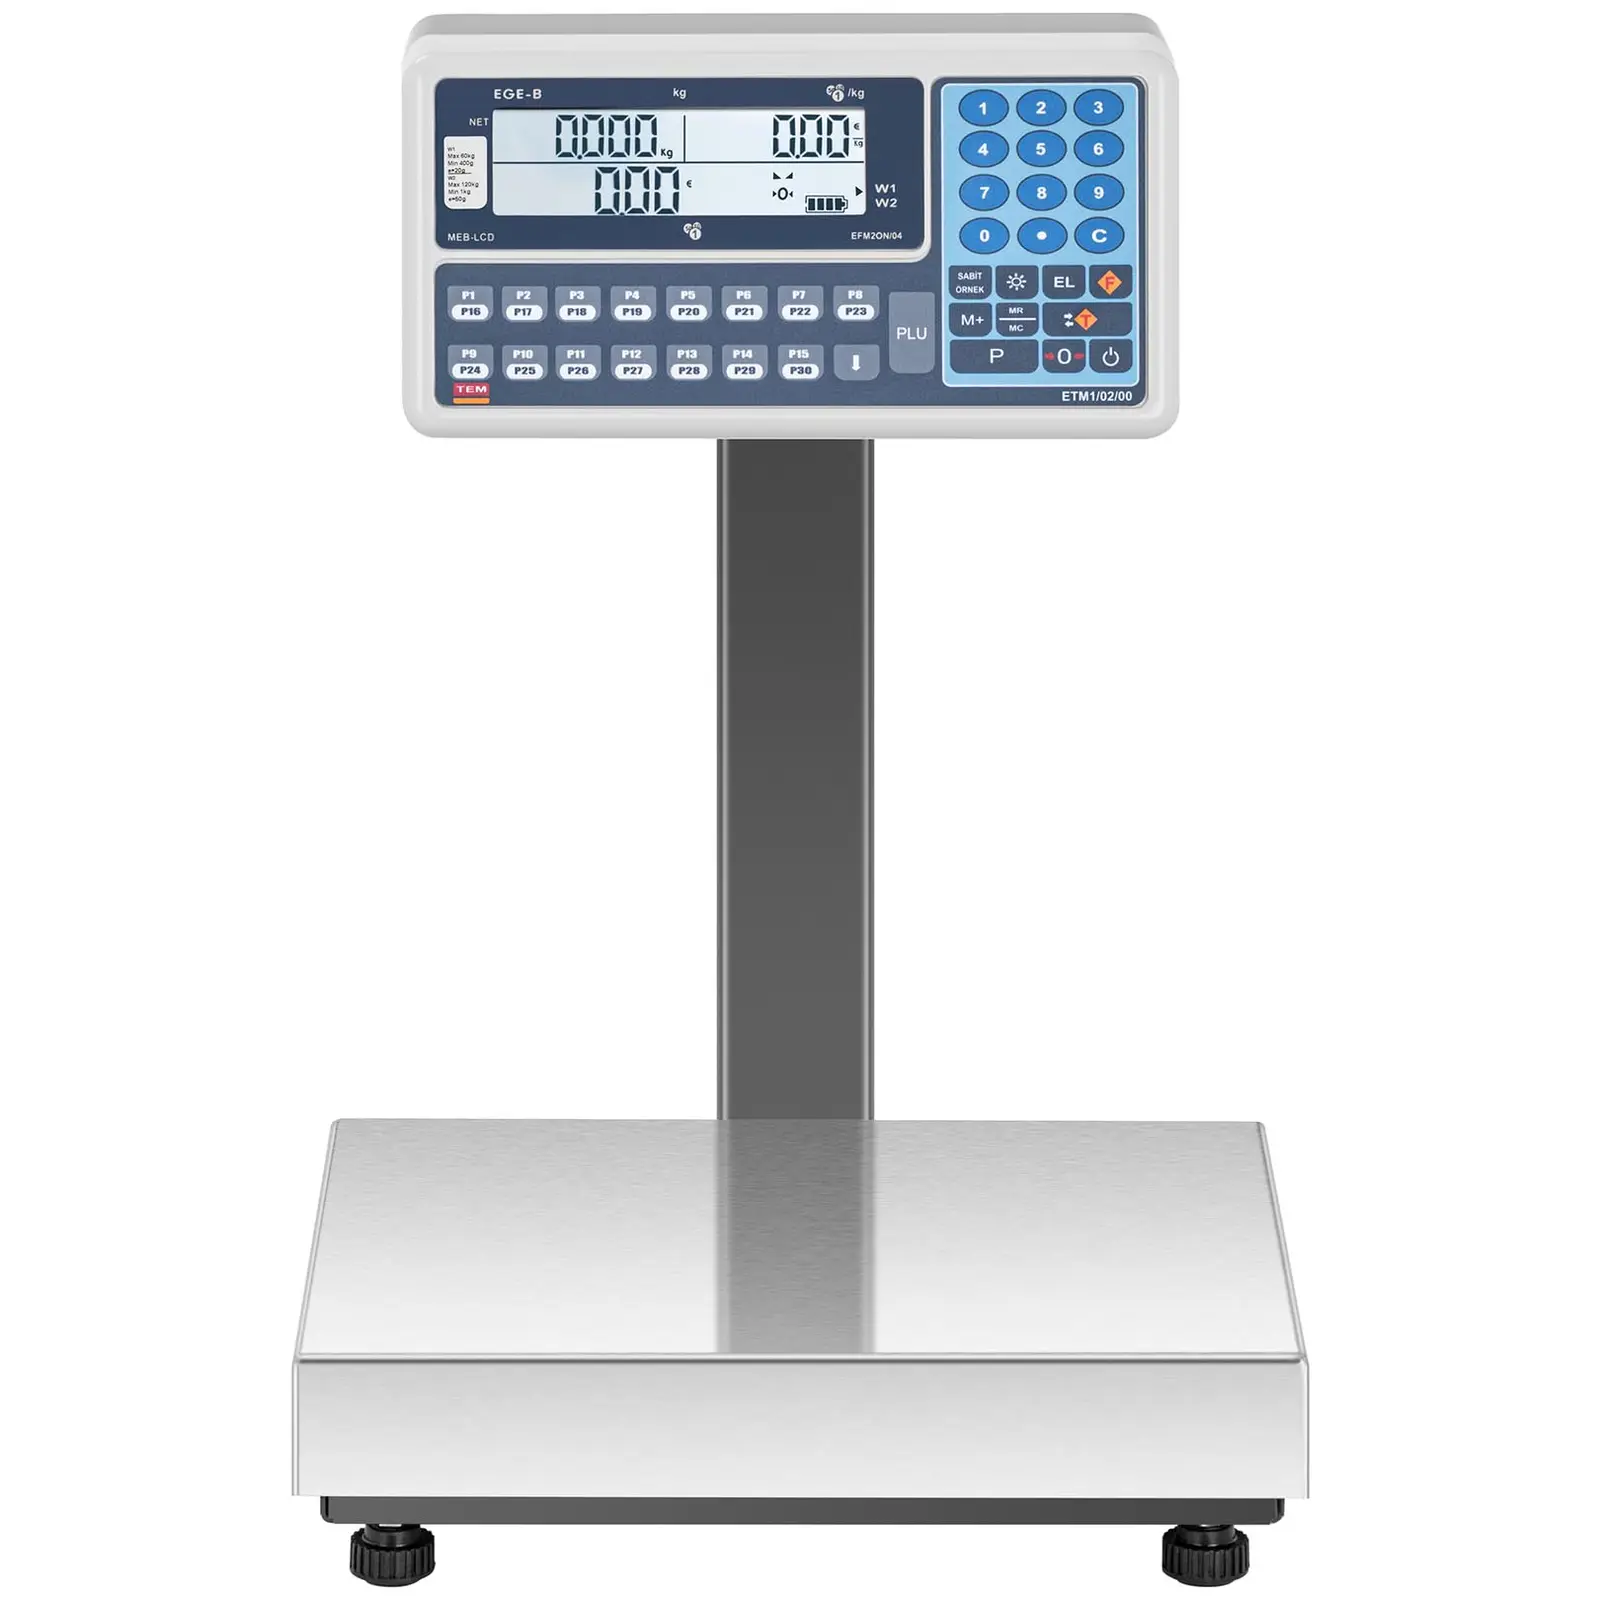 Balança de loja - 60 kg (20 g) / 120 kg (50 g) - LCD - legalização